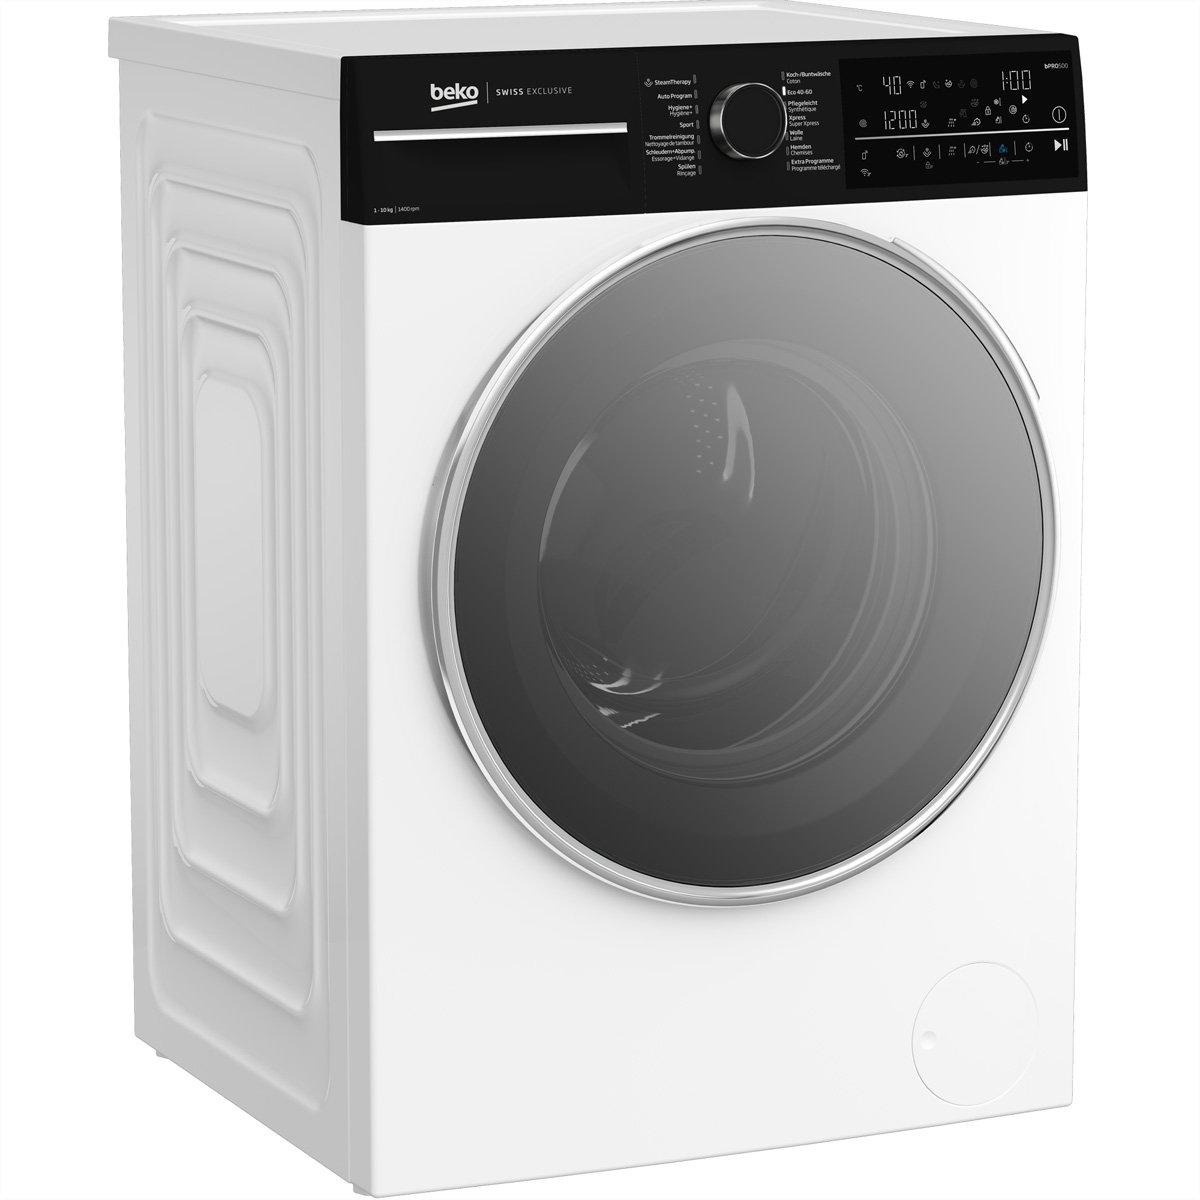 Beko Waschmaschine WM530, 10kg, A, weiss  